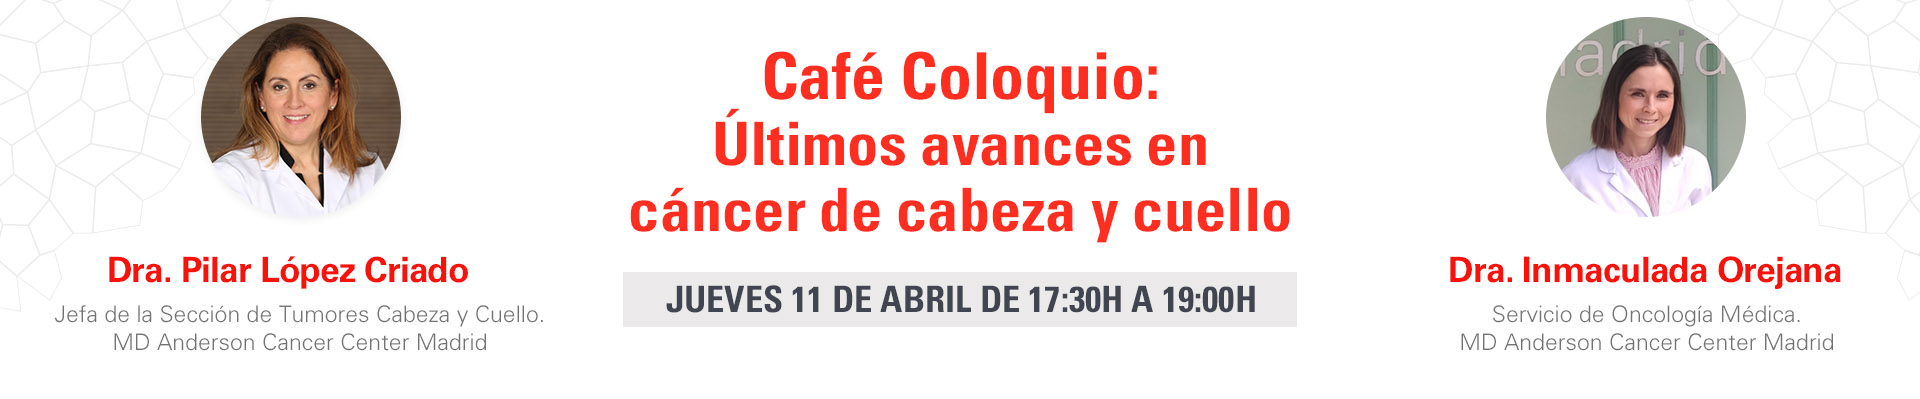 Café Coloquio: Últimos avances en cáncer de cabeza y cuello